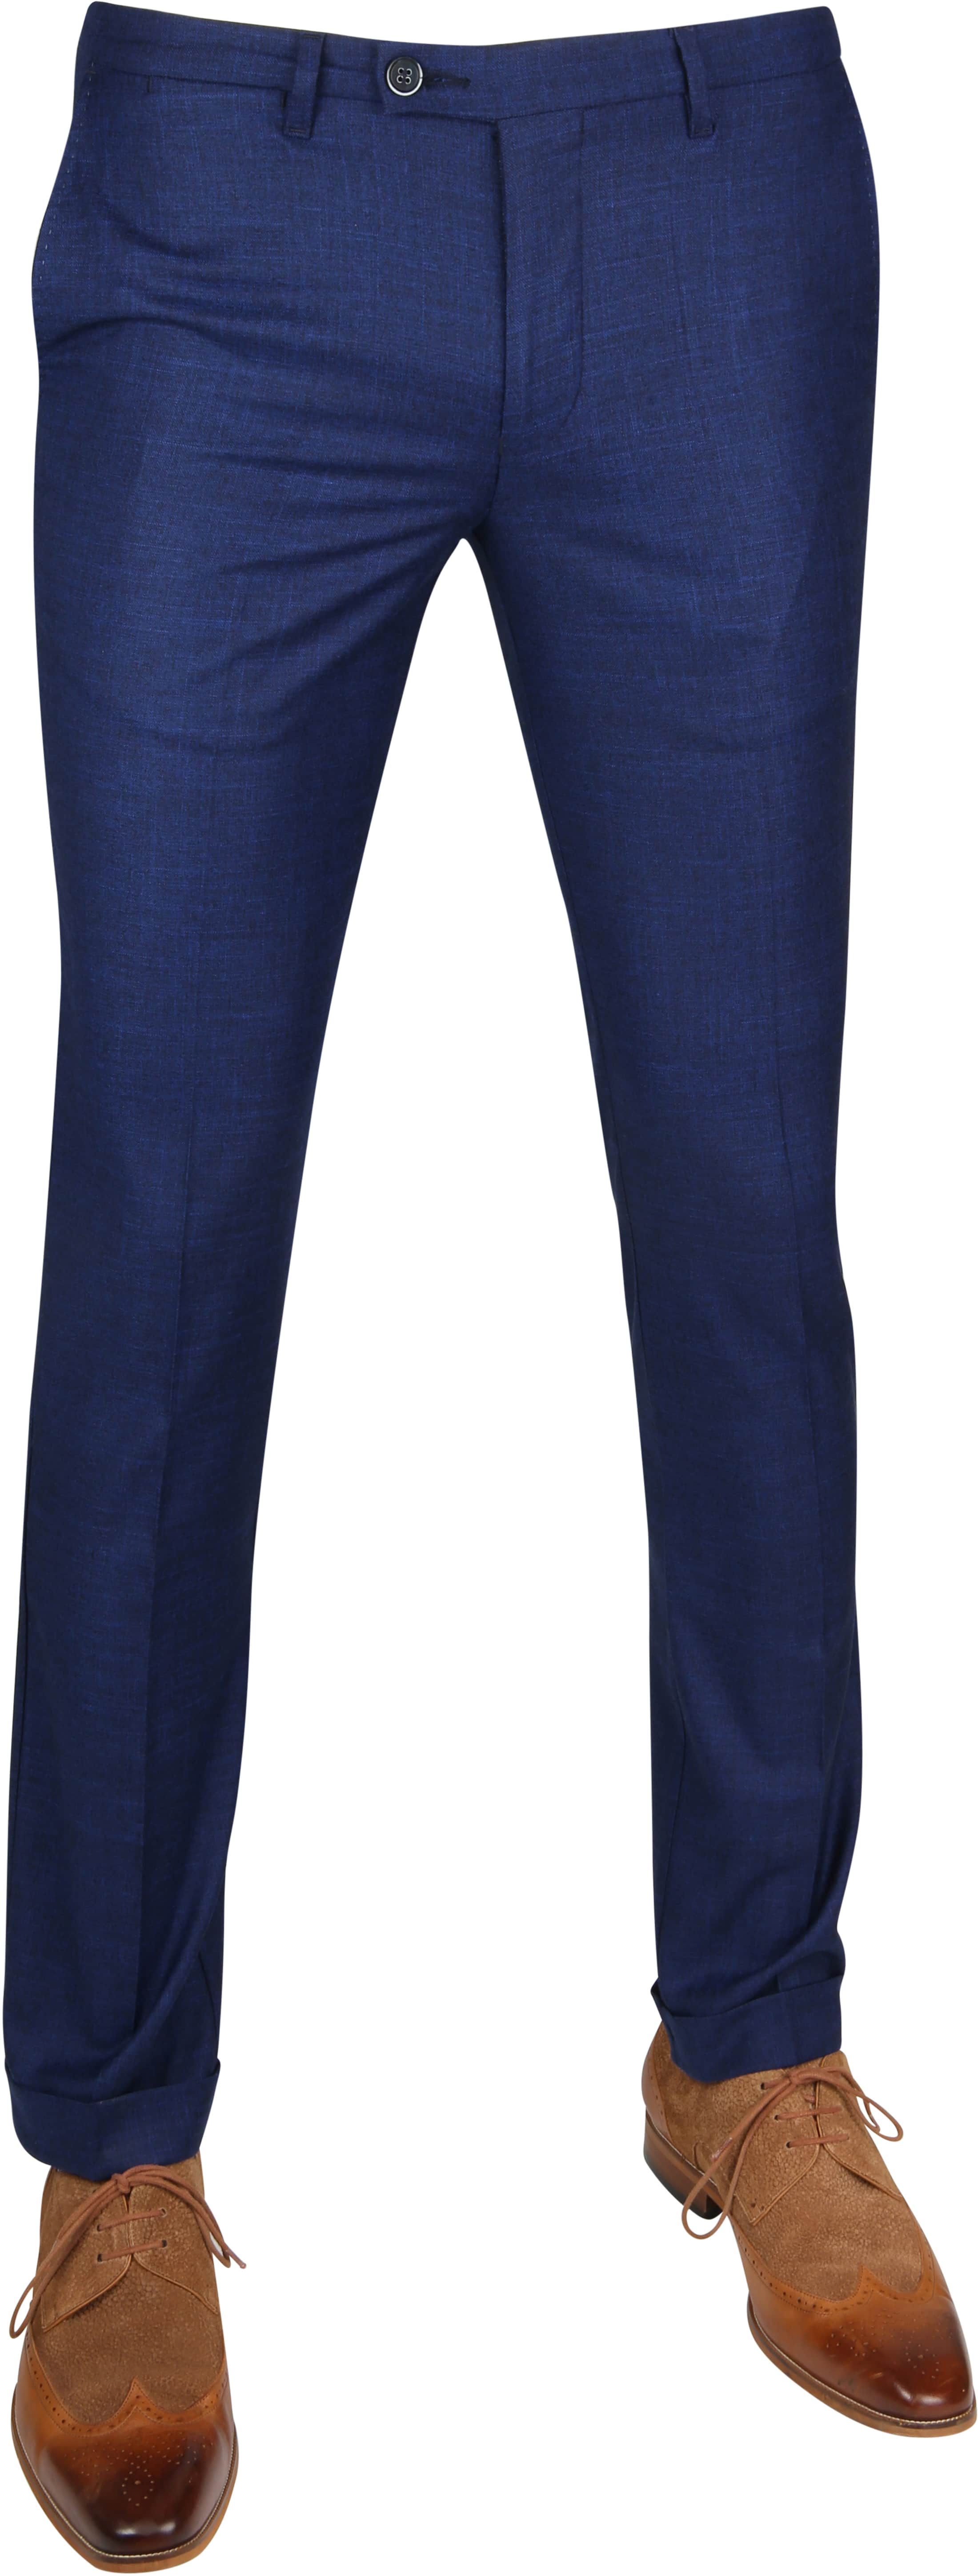 Suitable Pantalon Pisa Melange Dark Blue size 36-R